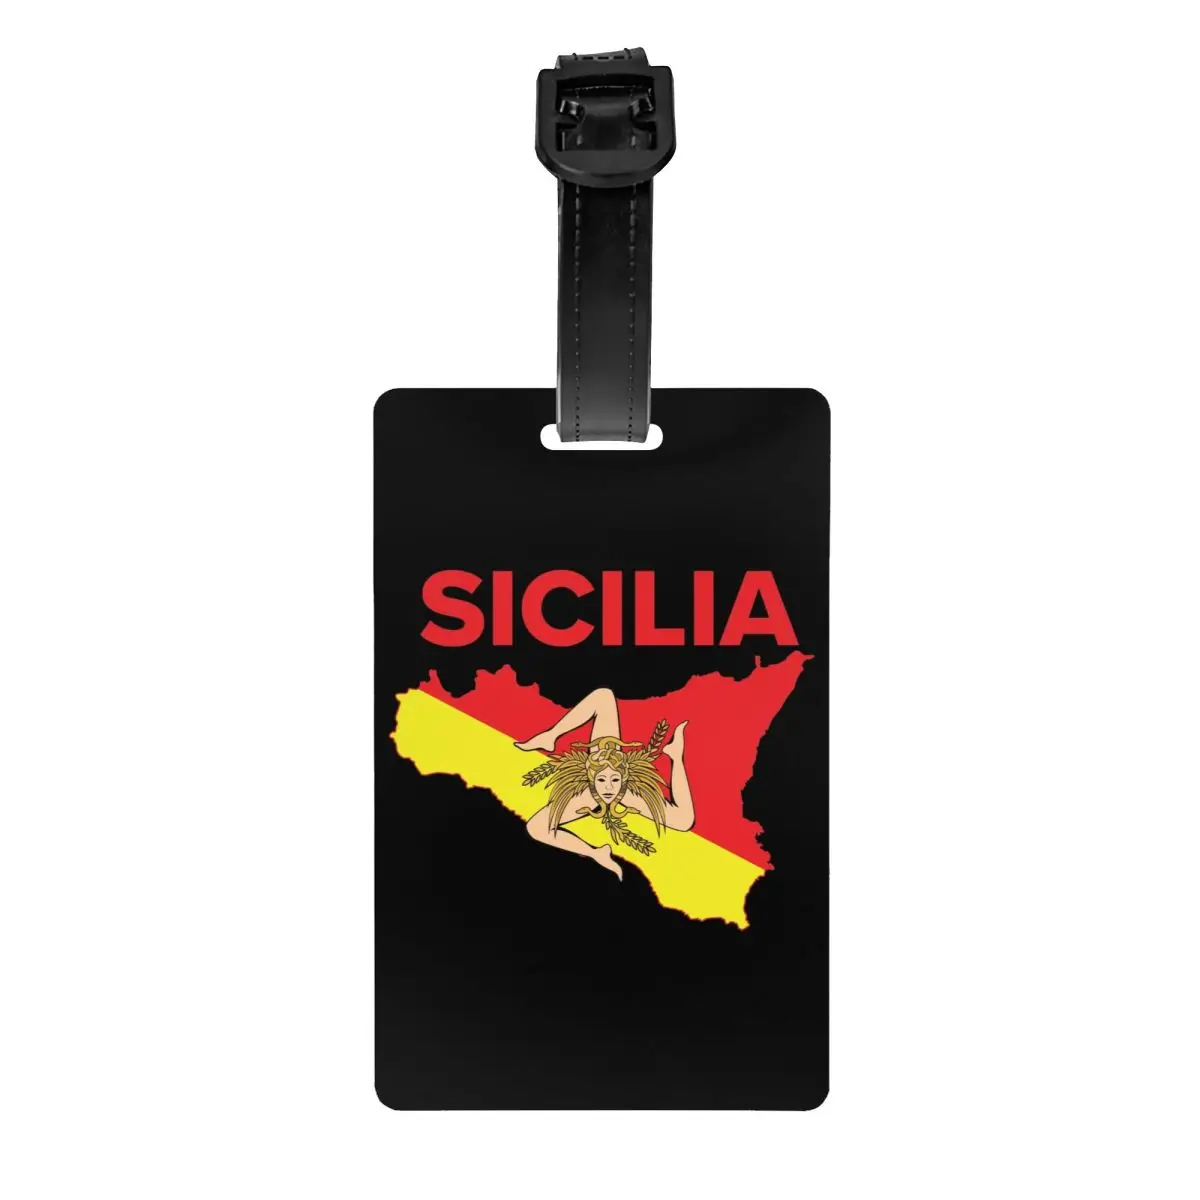 

Карта Сицилия Тринакрия багажная бирка для чемоданов Сицилийская гордость Личная Обложка имя удостоверение личности